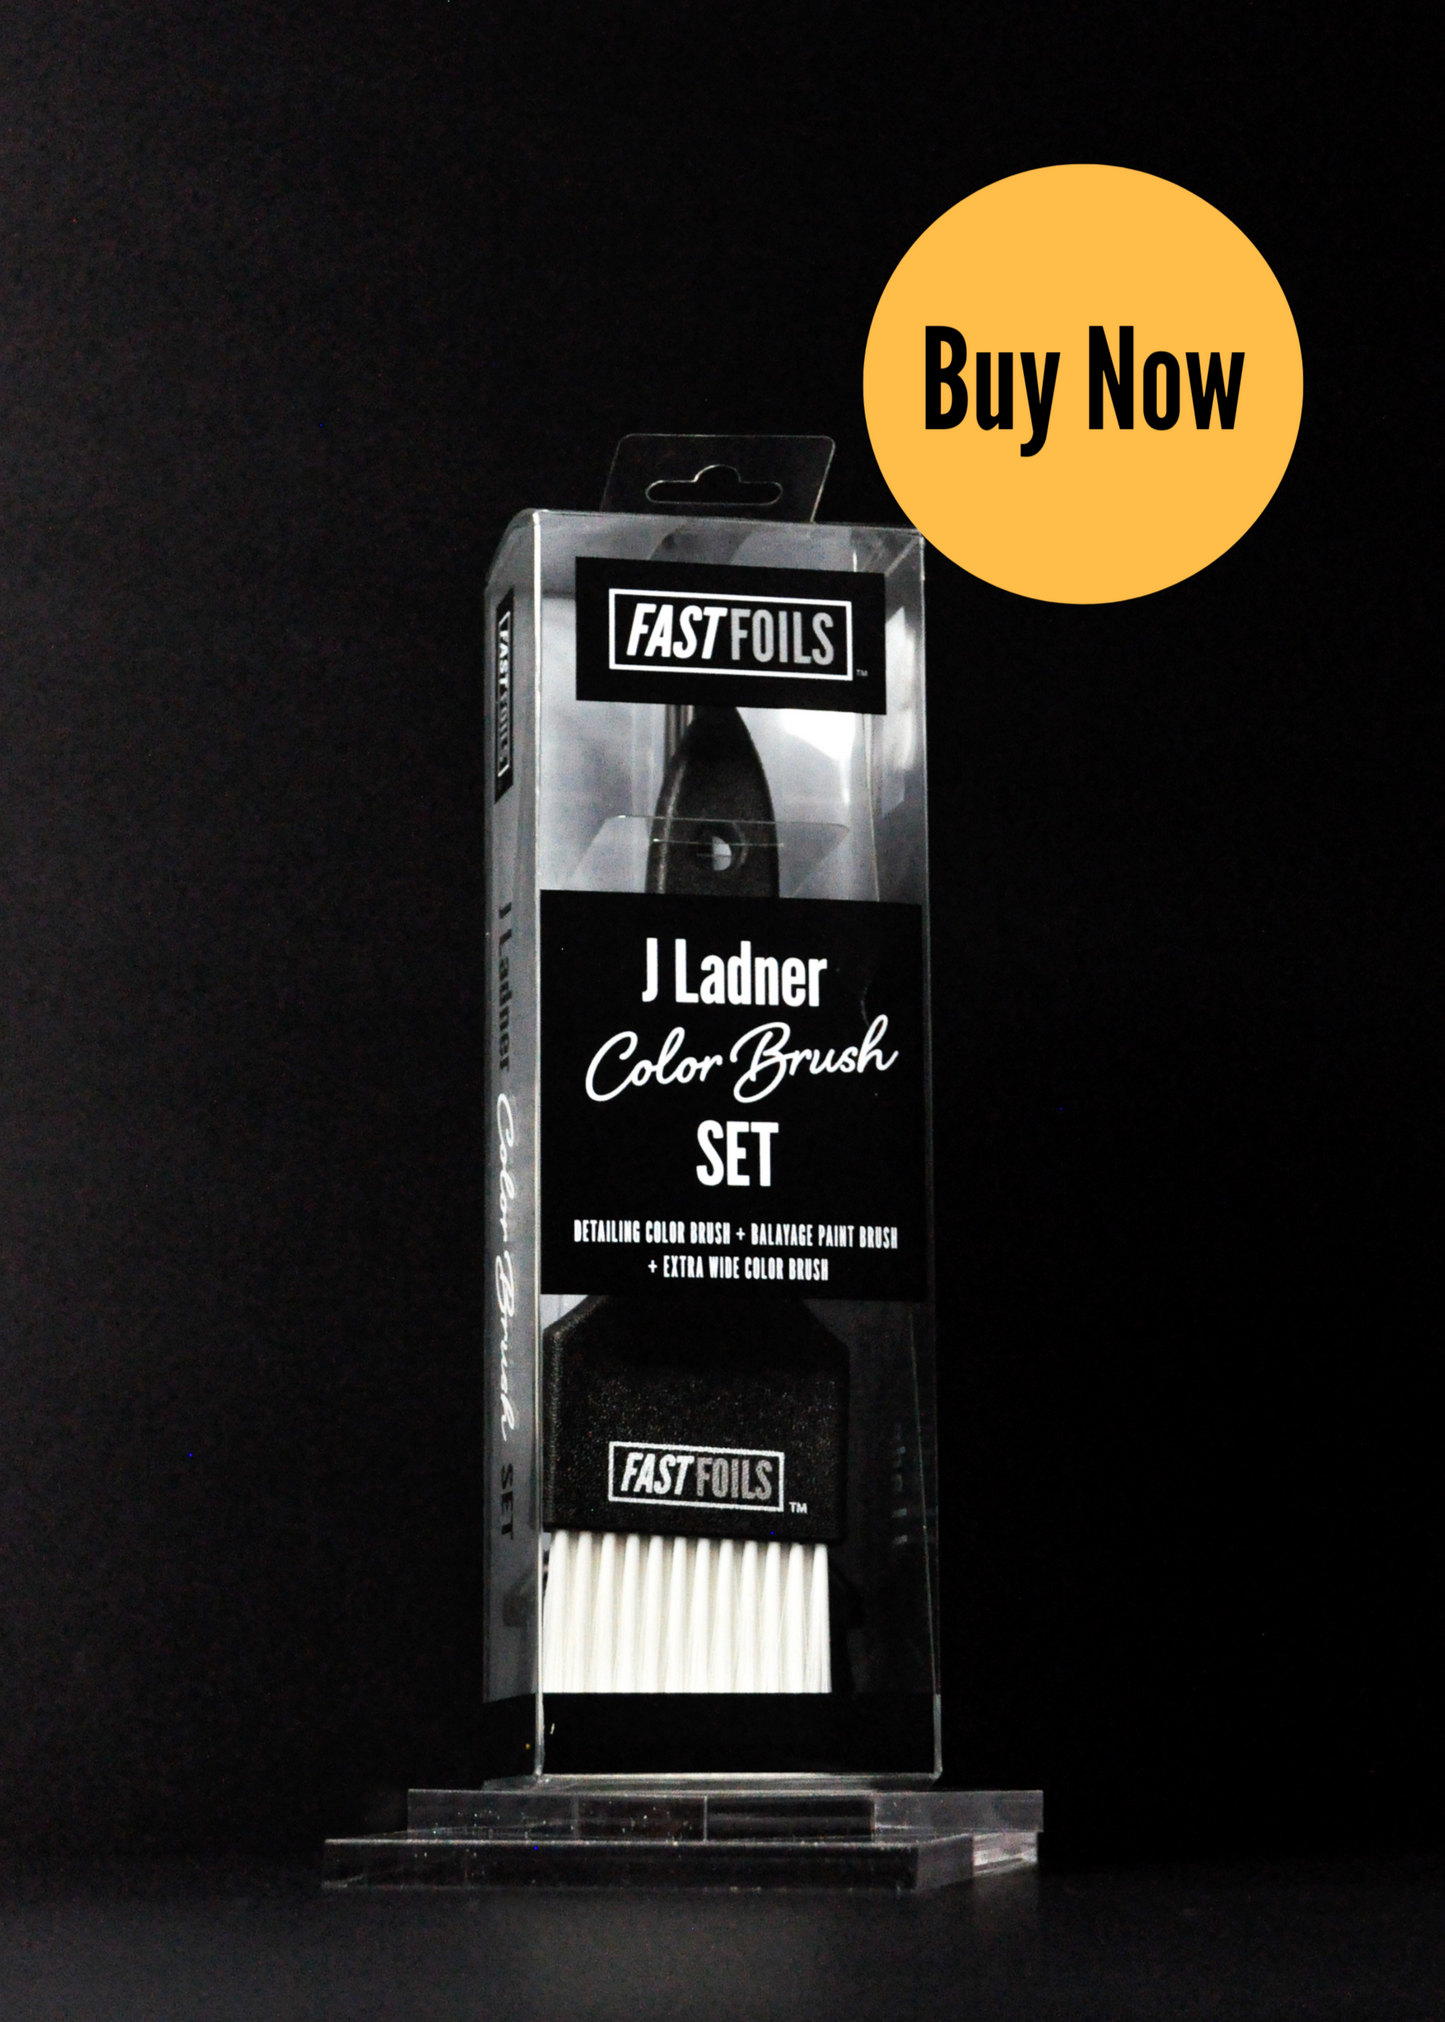 Limited-Edition J Ladner Brush Set